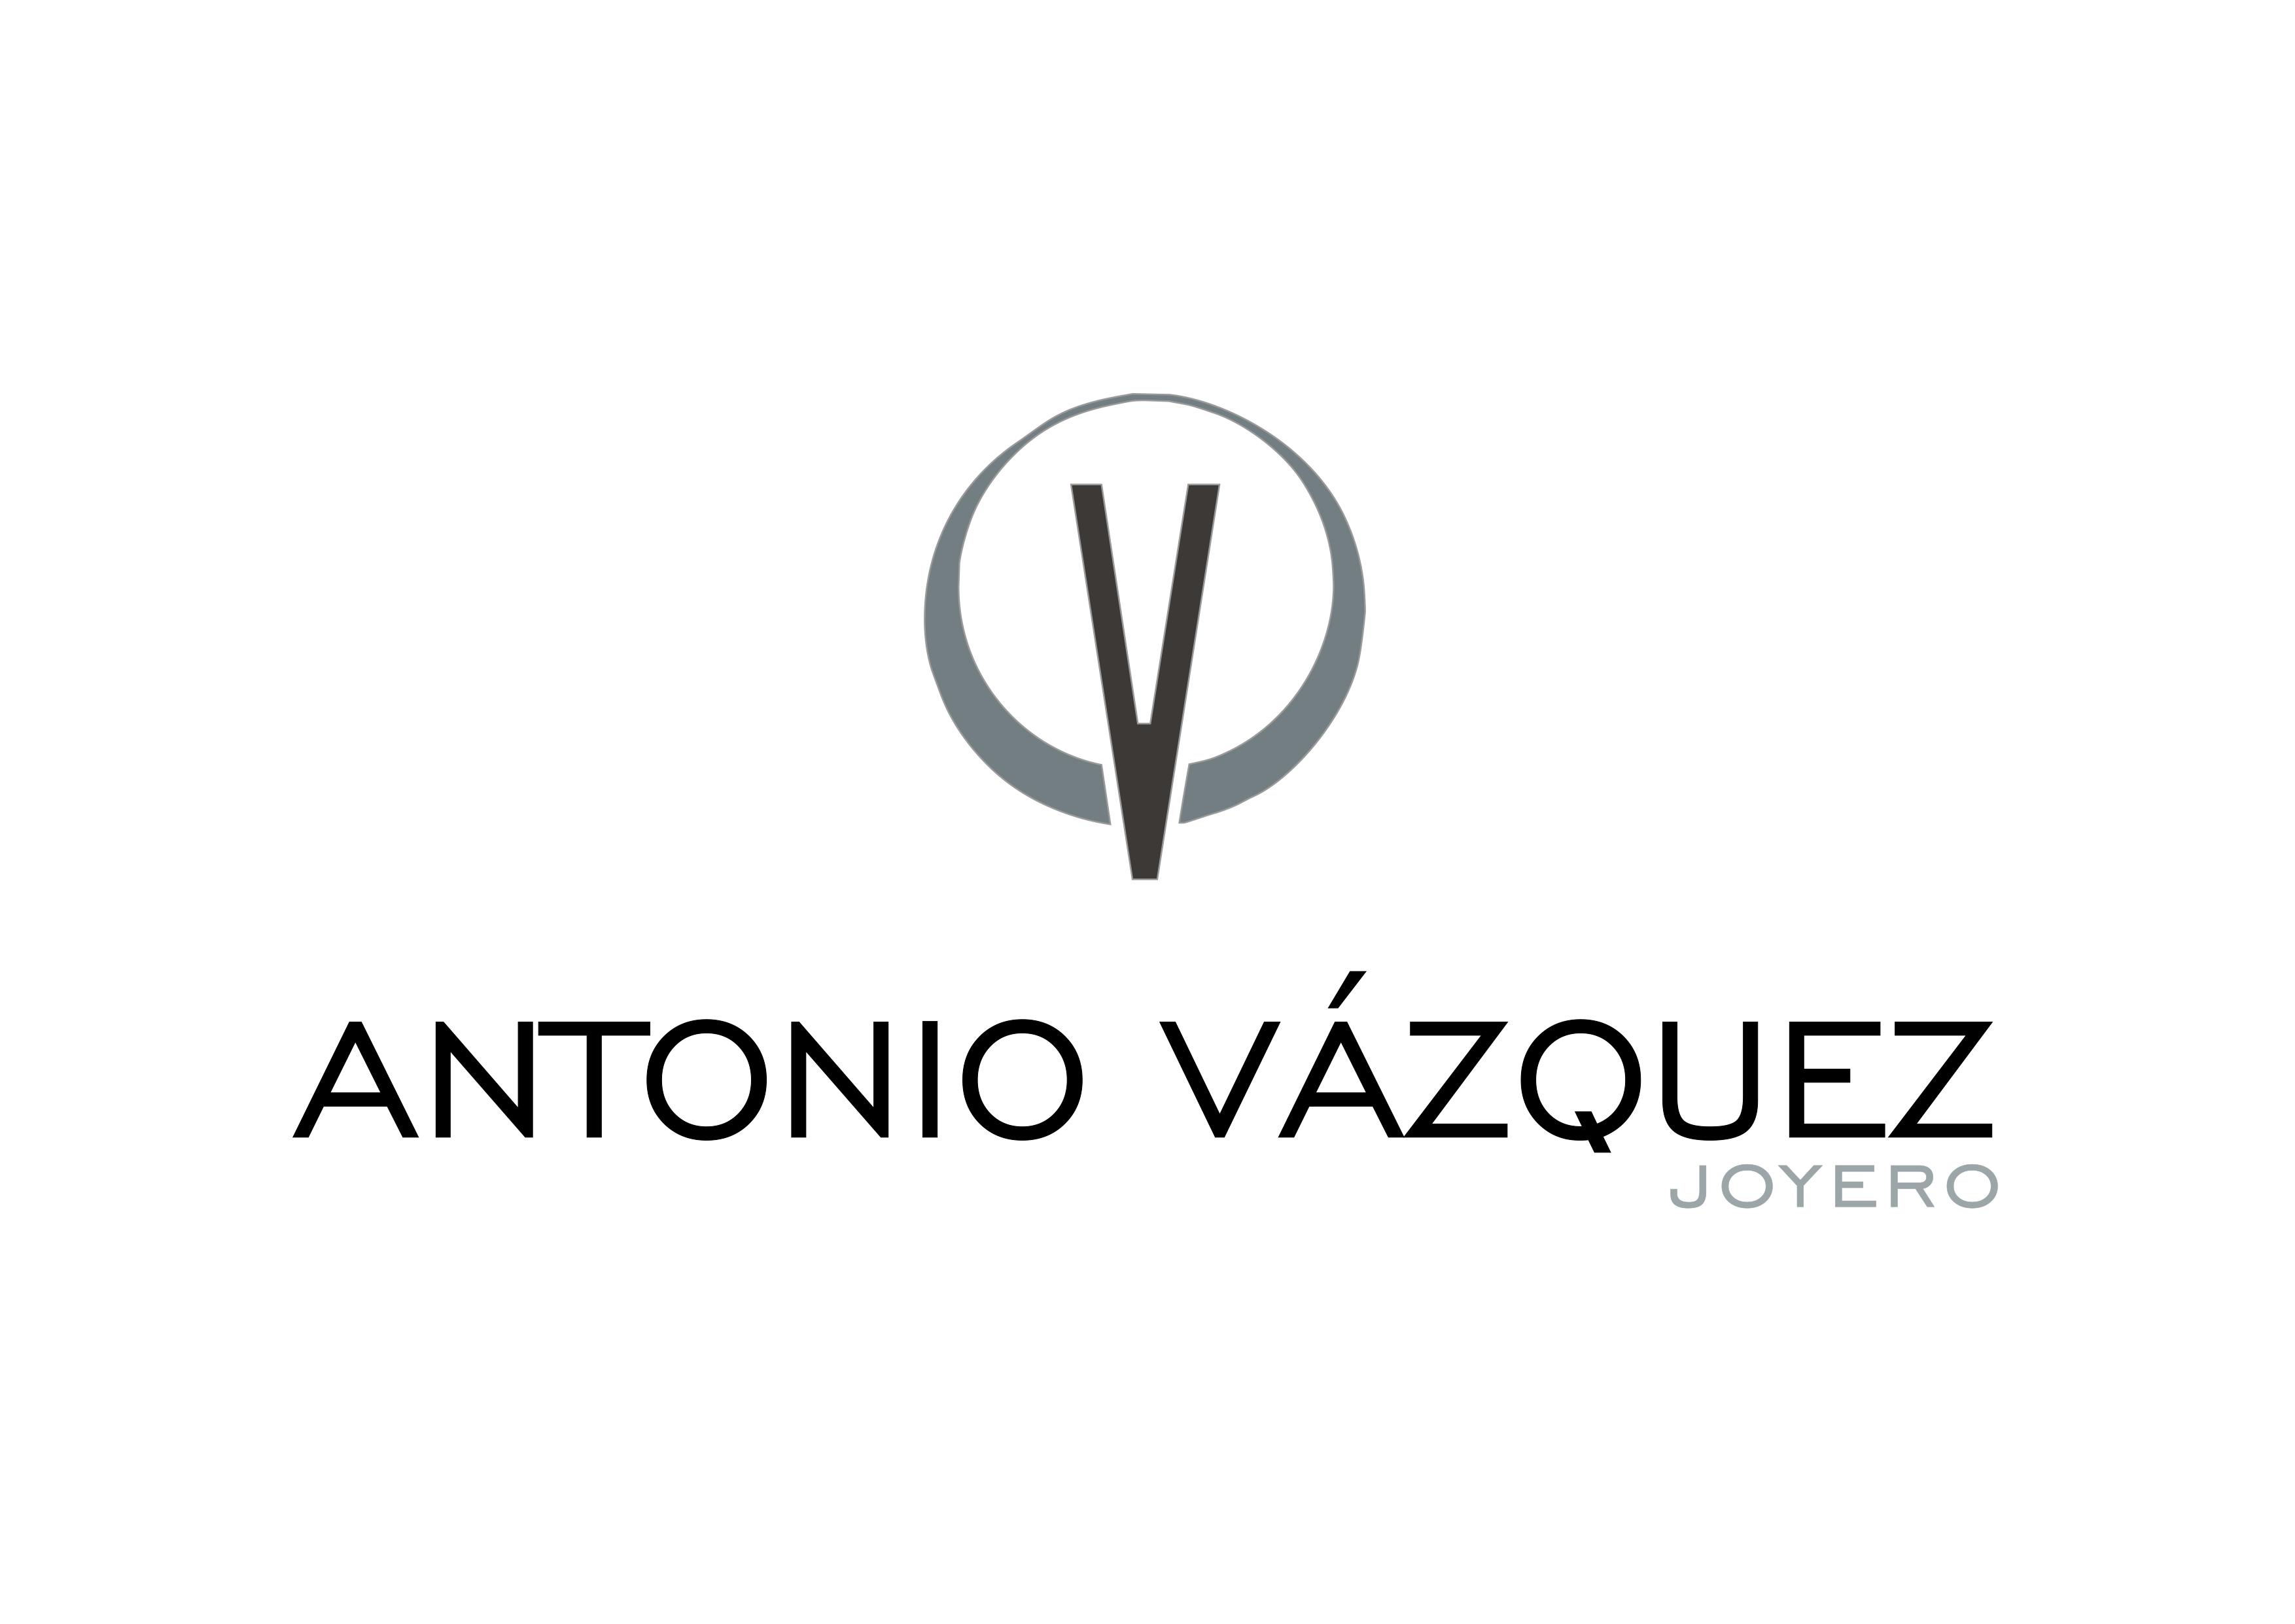 Antonio Vázquez Joyero